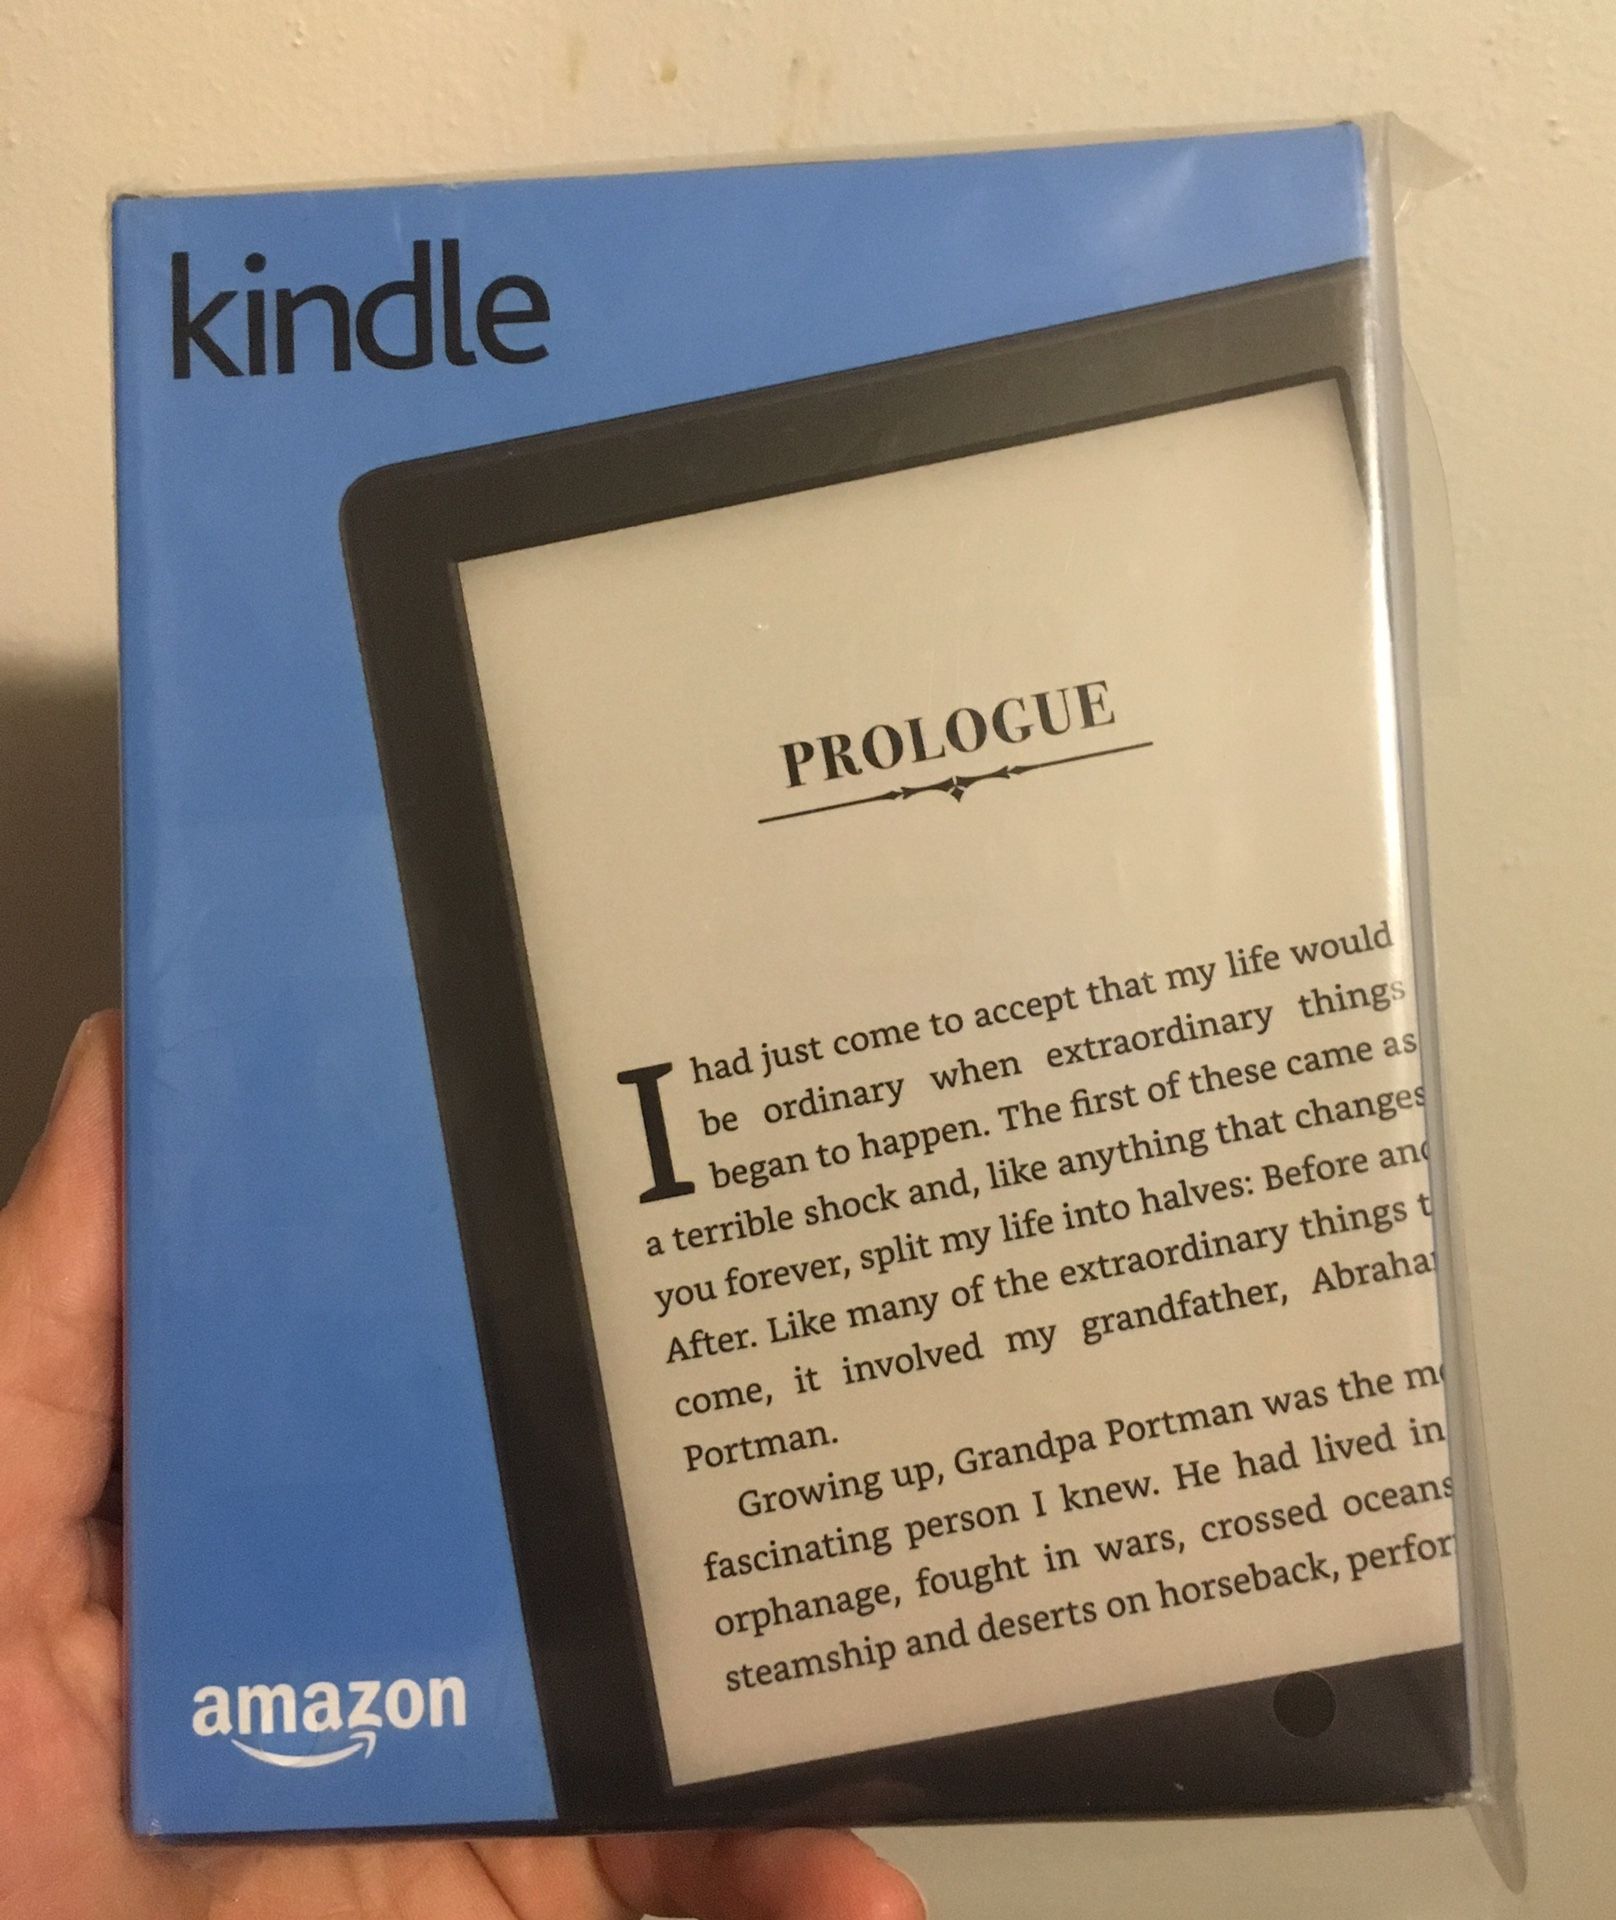 NEW Amazon Kindle e-reader sealed